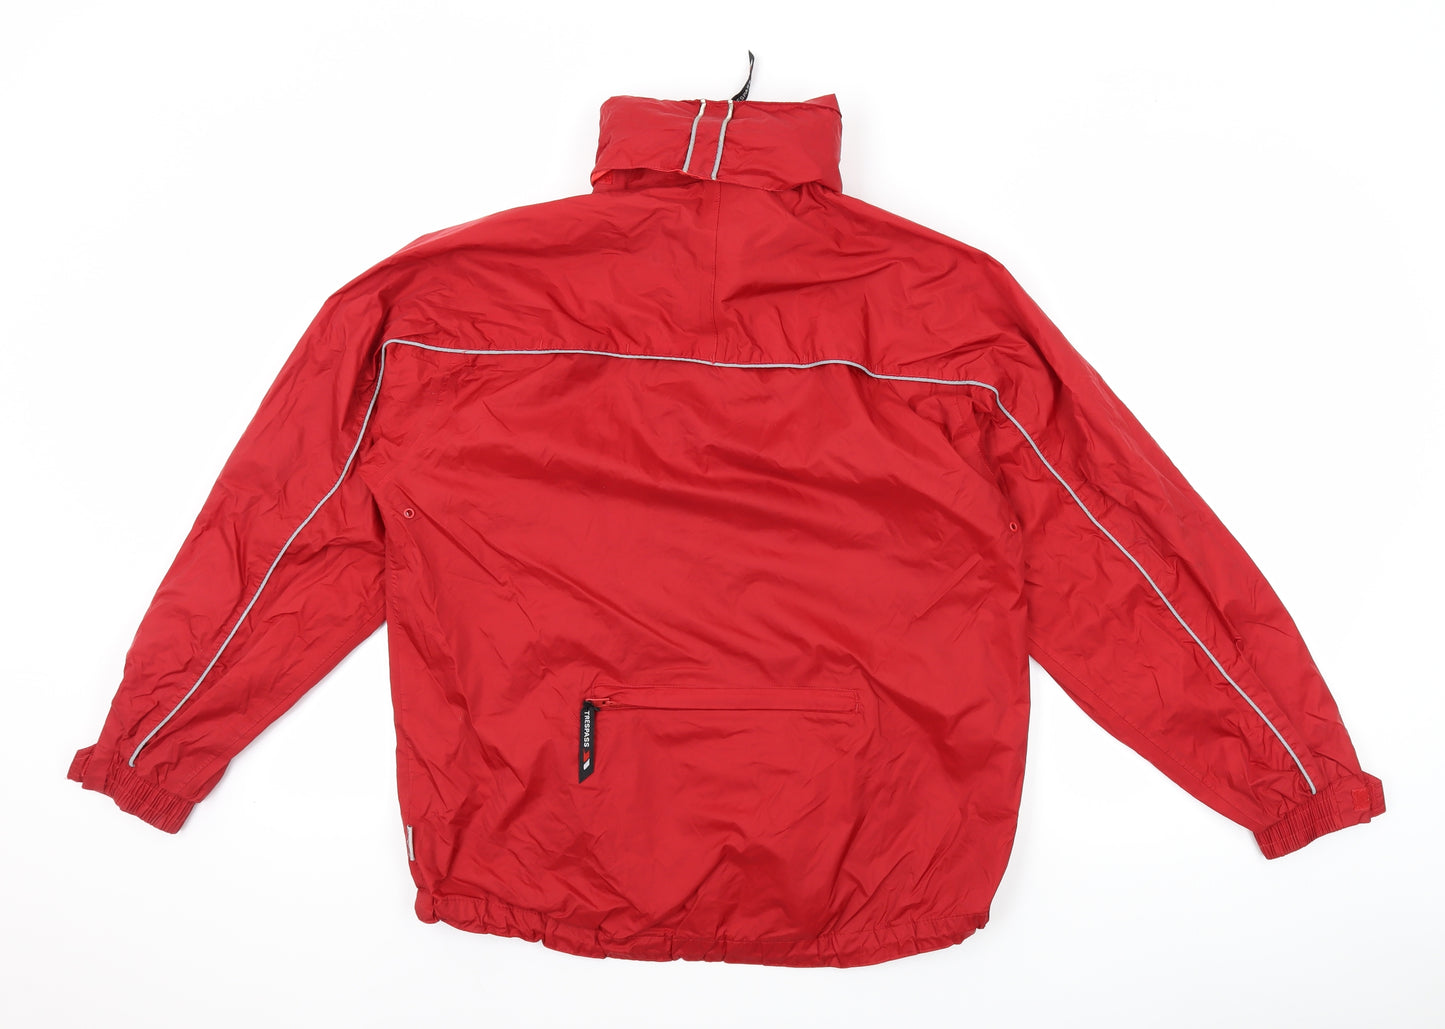 Trespass Mens Red Windbreaker Jacket Size S Zip - Hood Included